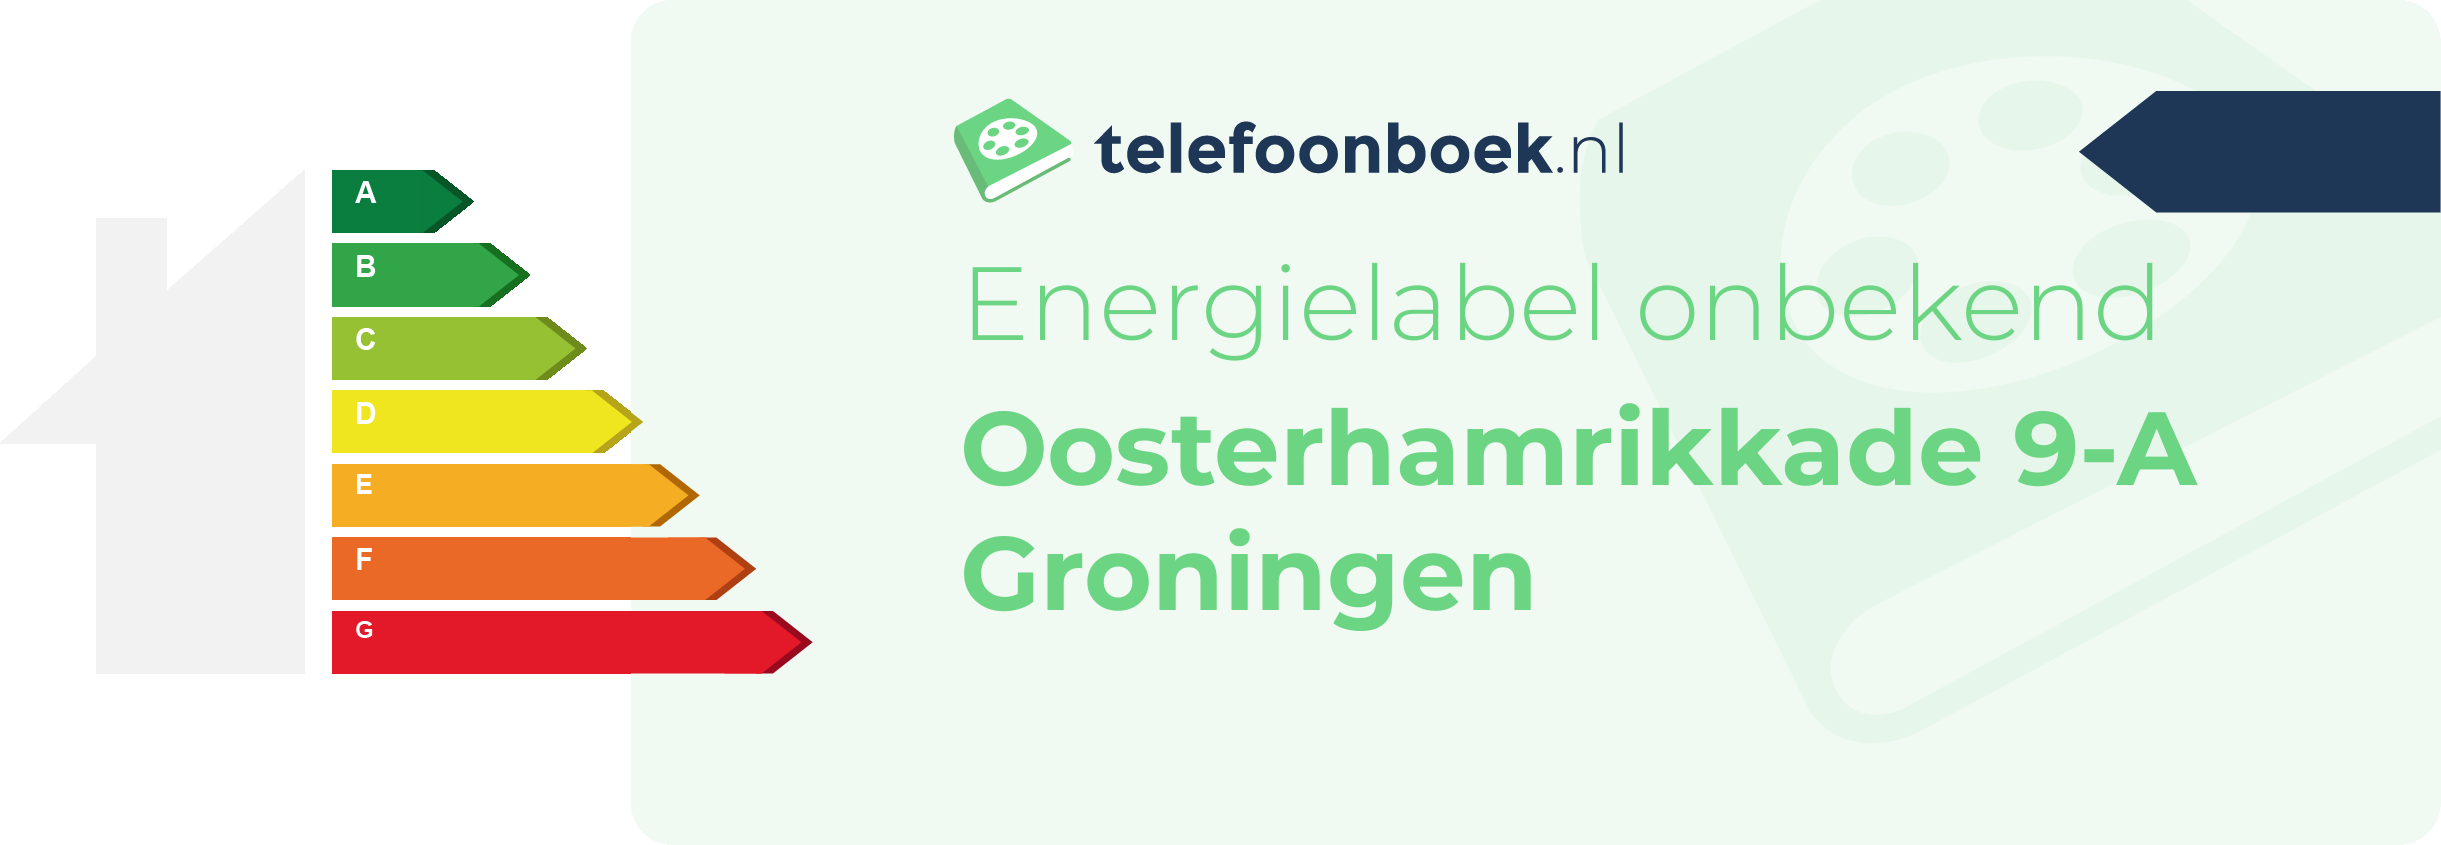 Energielabel Oosterhamrikkade 9-A Groningen